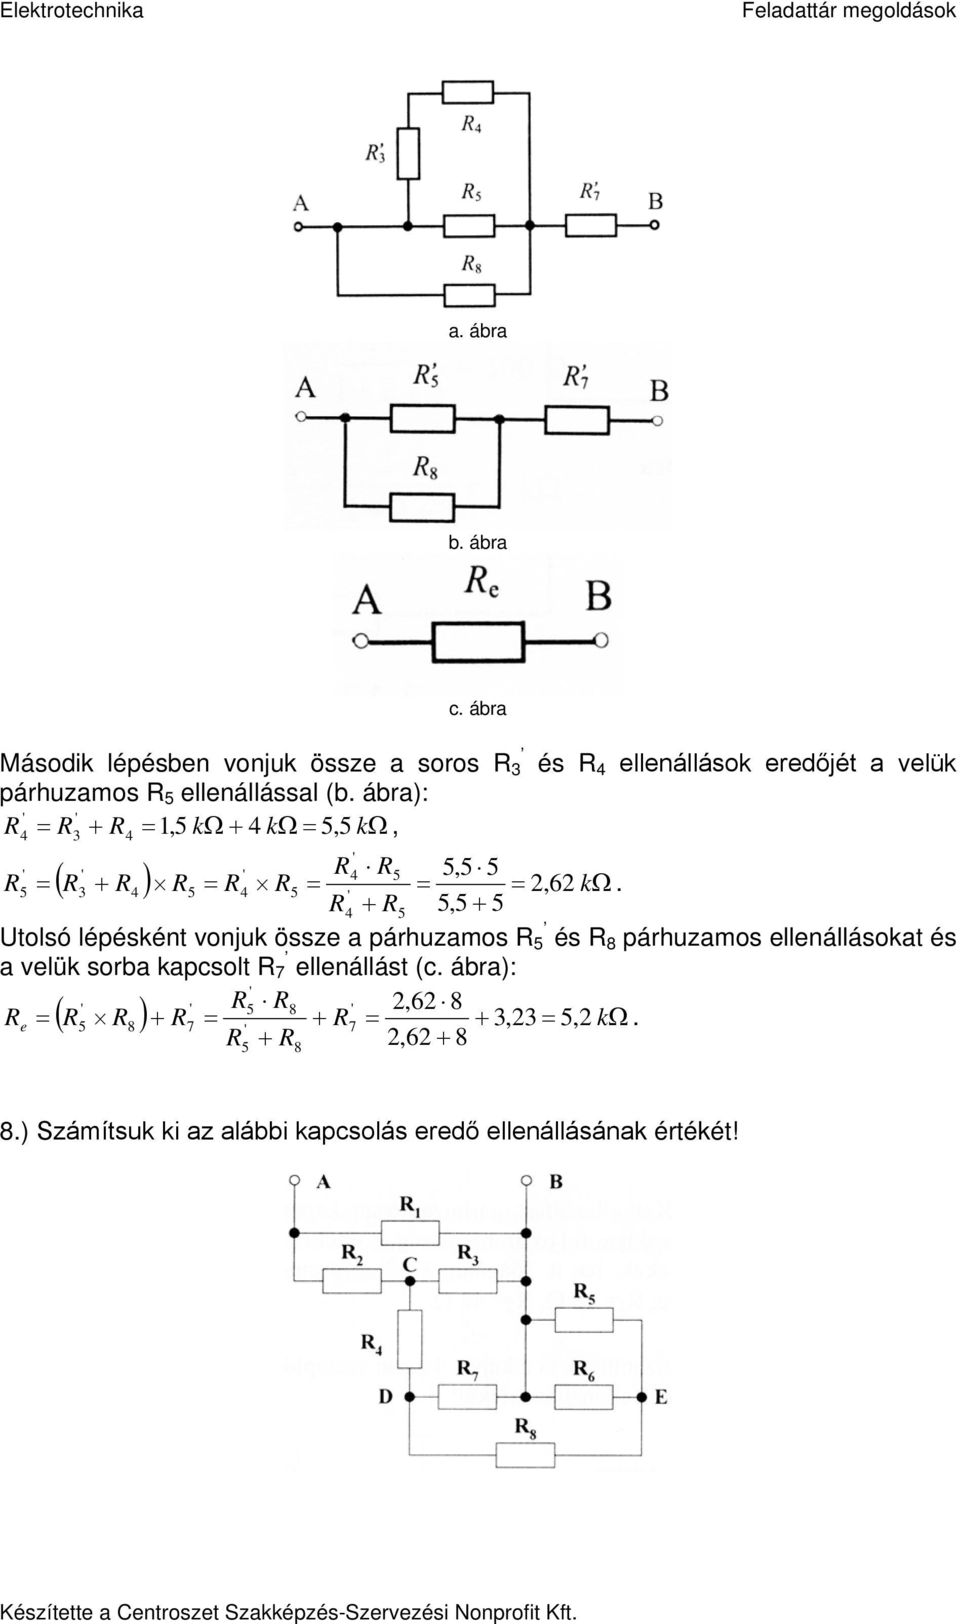 Elektrotechnika Feladattár megoldások - PDF Ingyenes letöltés